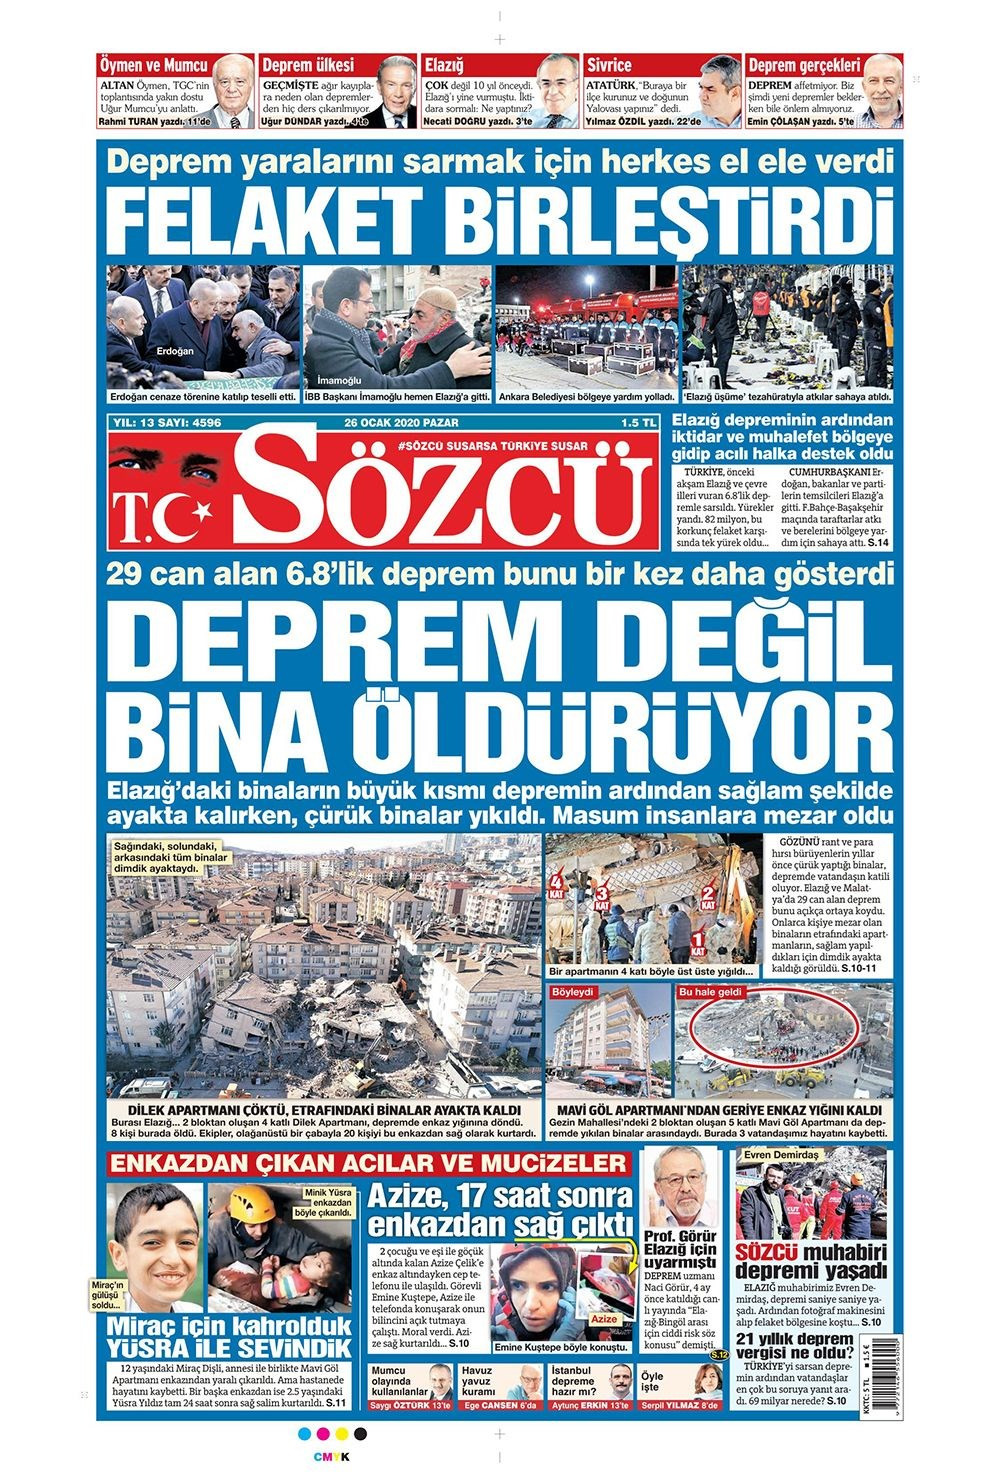 Elazığ depremi gazete manşetlerinde! 26 Ocak 2020 gazete manşetleri - Resim: 1